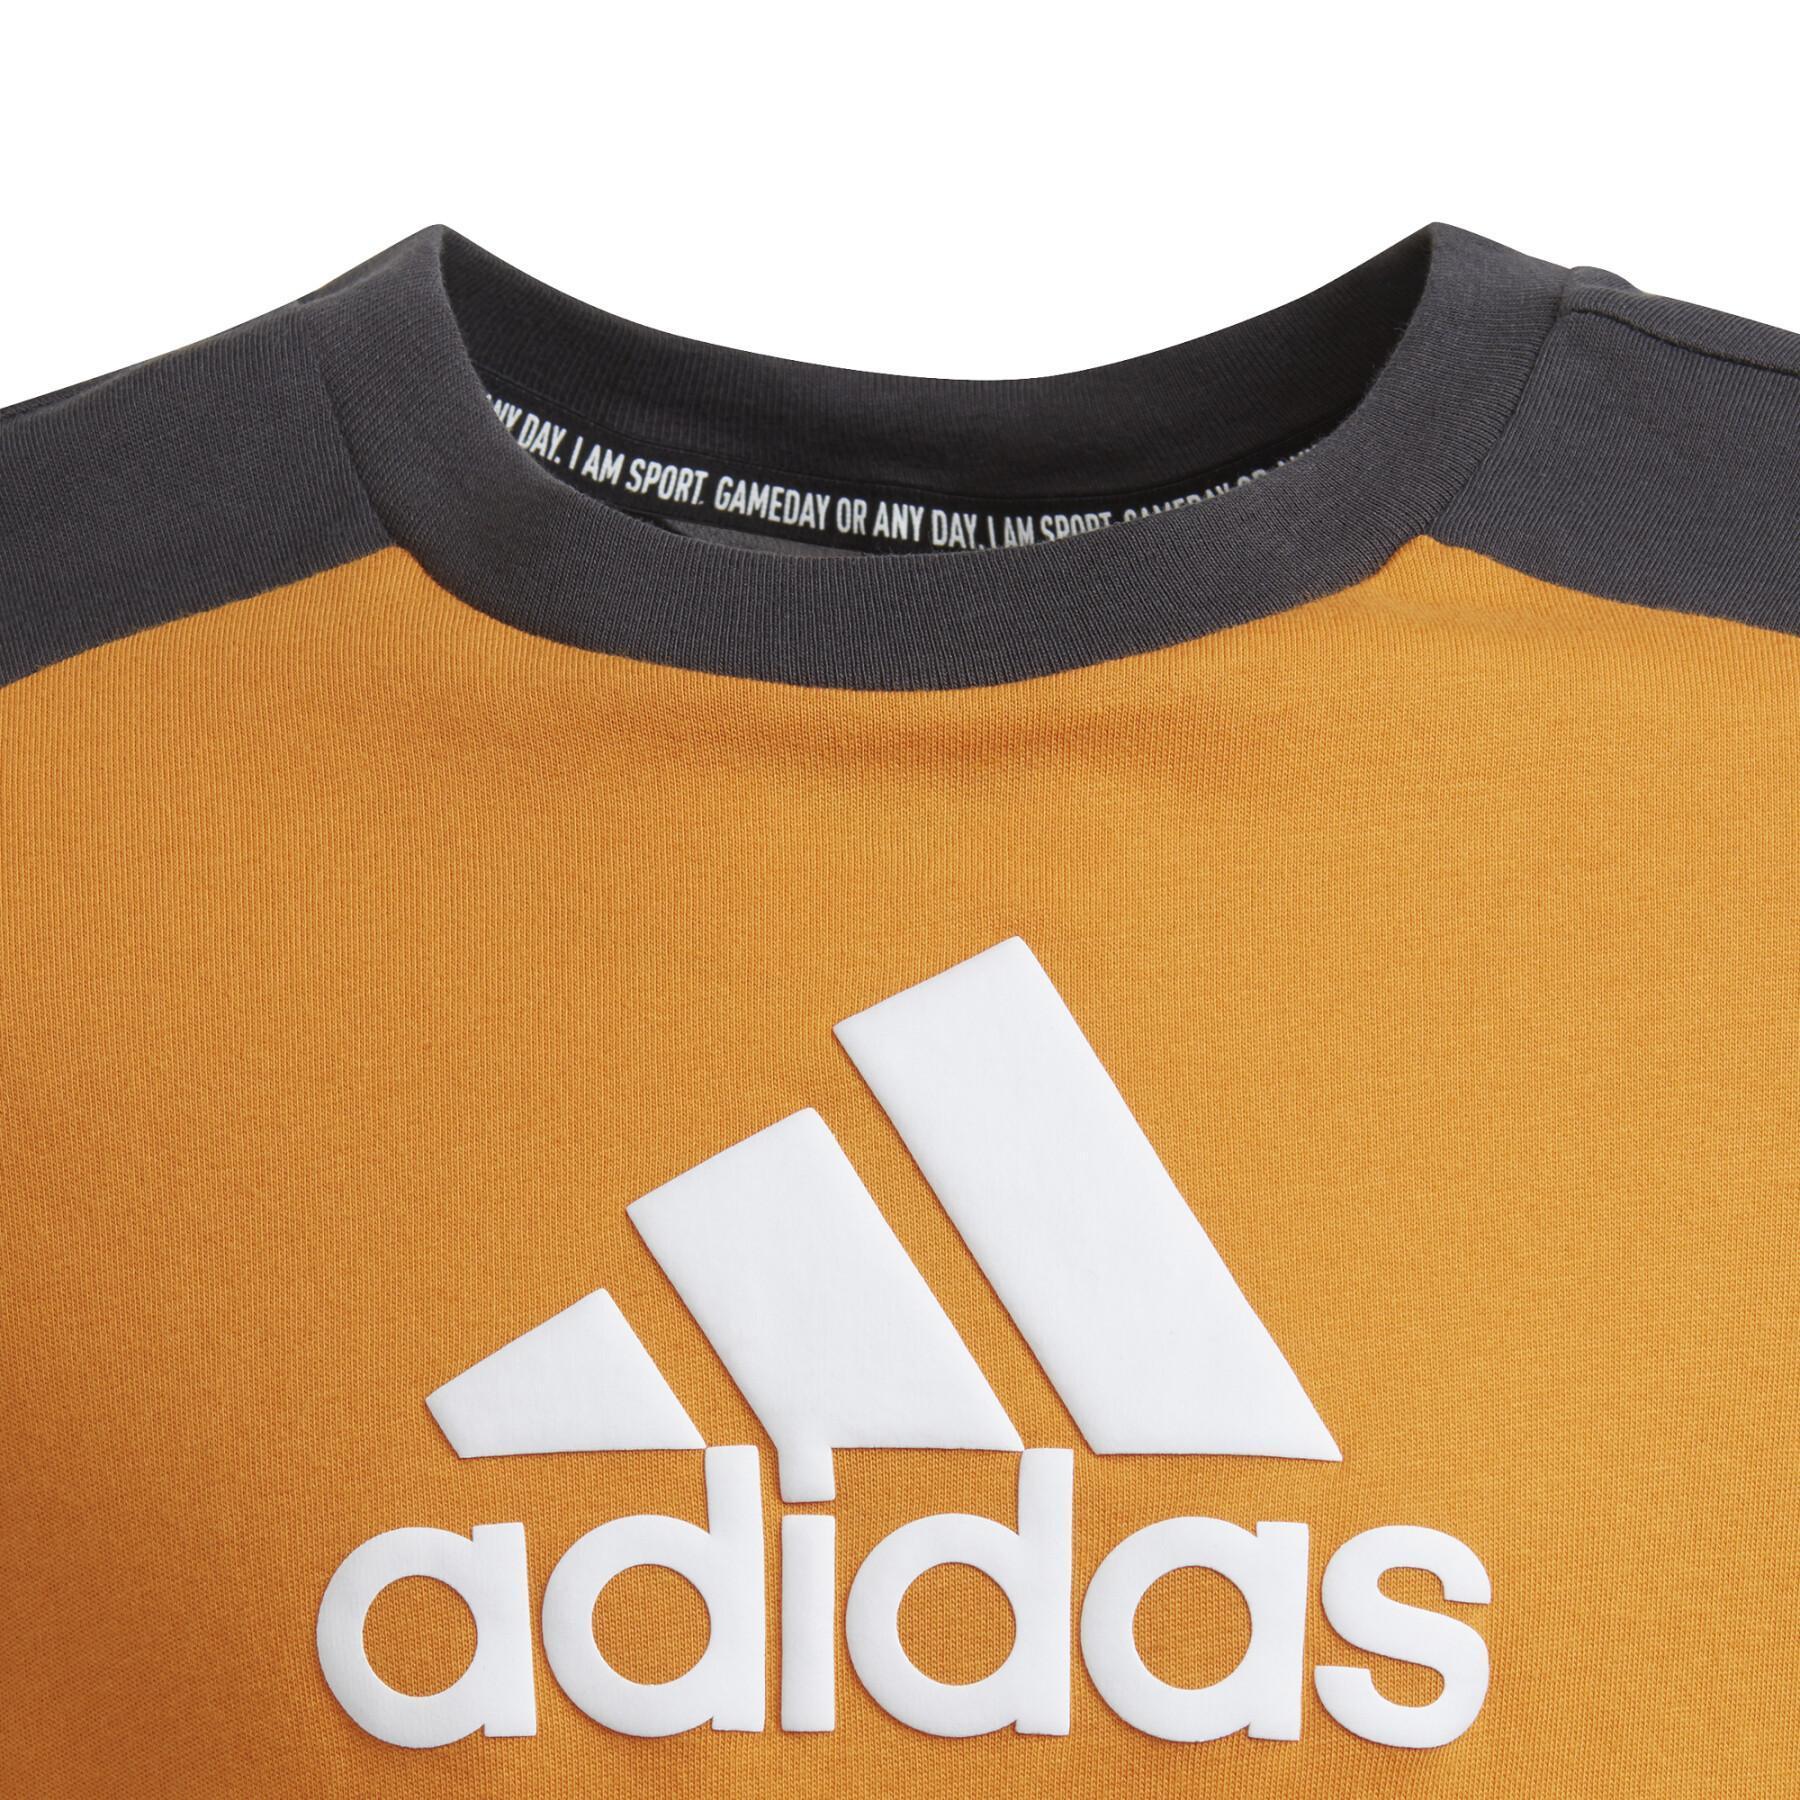 Kinder-T-Shirt adidas Logo